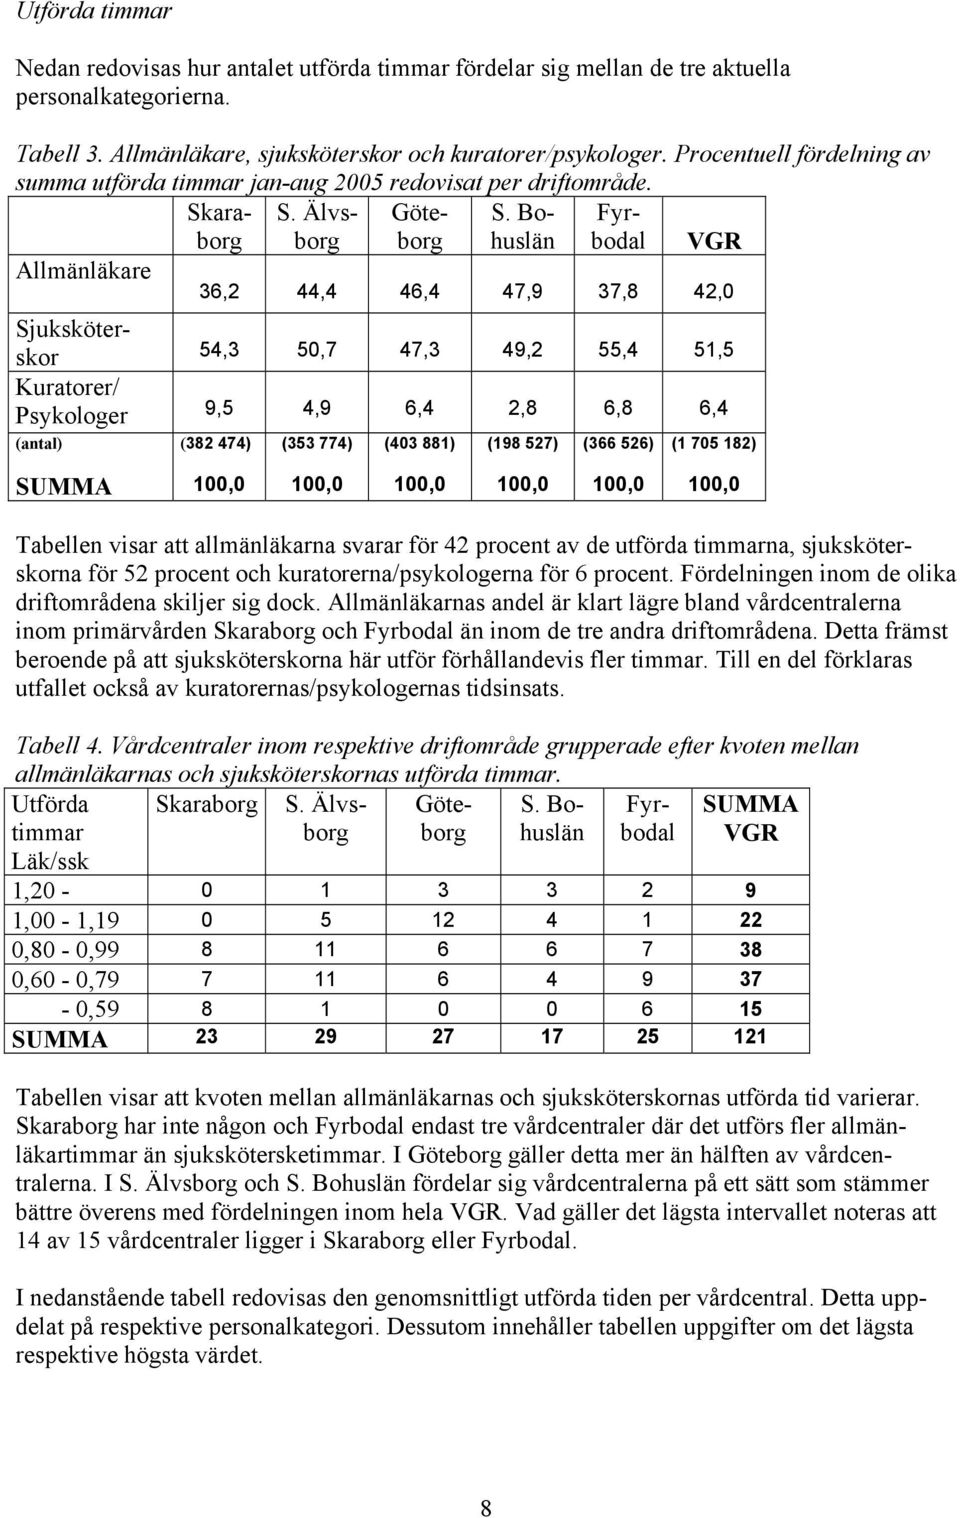 Bohuslän Fyrbodal VGR Allmänläkare 36,2 44,4 46,4 47,9 37,8 42,0 Sjuksköterskor 54,3 50,7 47,3 49,2 55,4 51,5 Kuratorer/ Psykologer 9,5 4,9 6,4 2,8 6,8 6,4 (antal) (382 474) (353 774) (403 881) (198